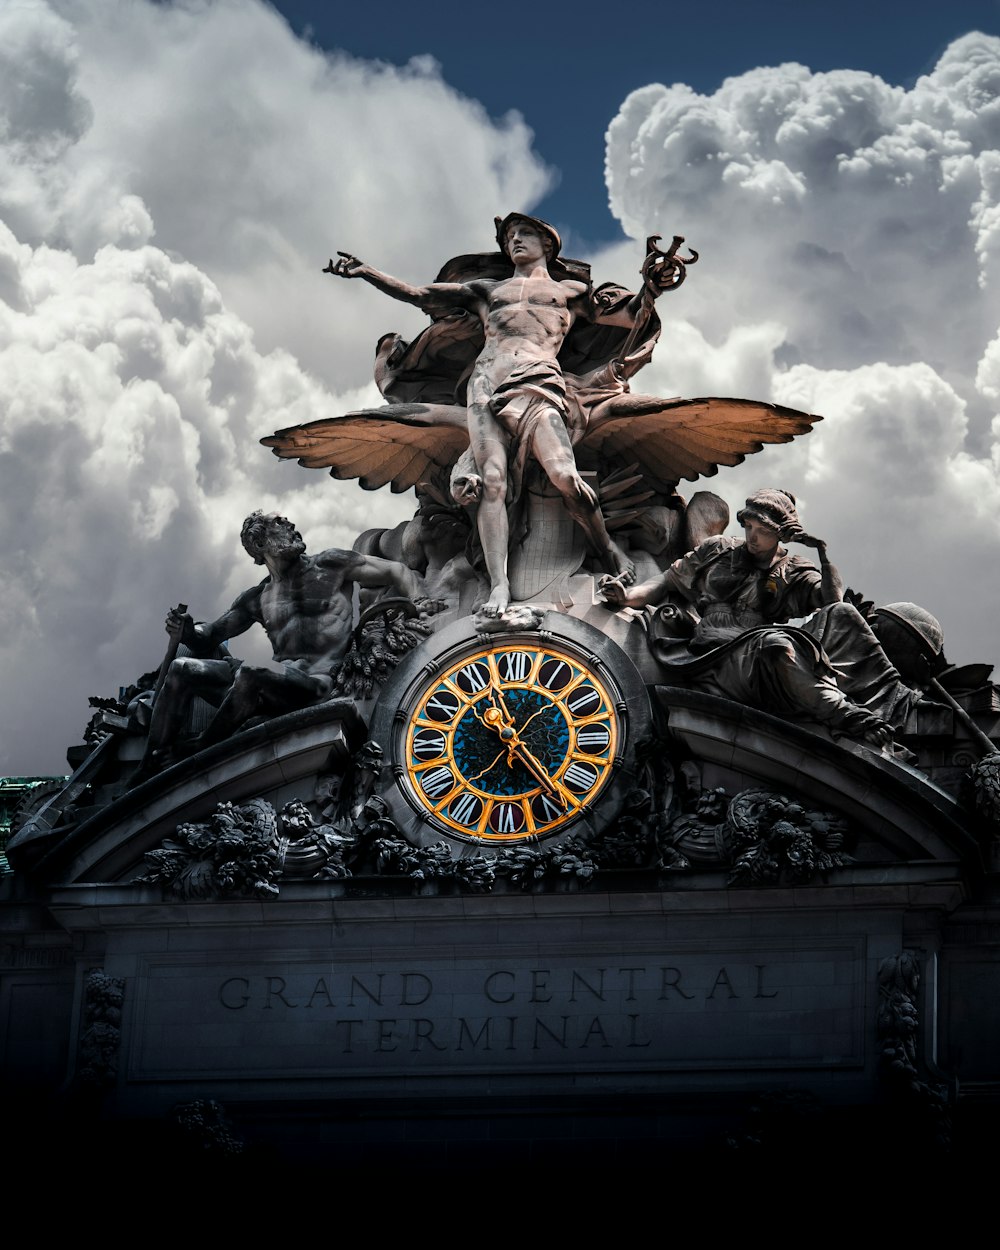 foto a colori selettiva della statua del Grand Central Terminal